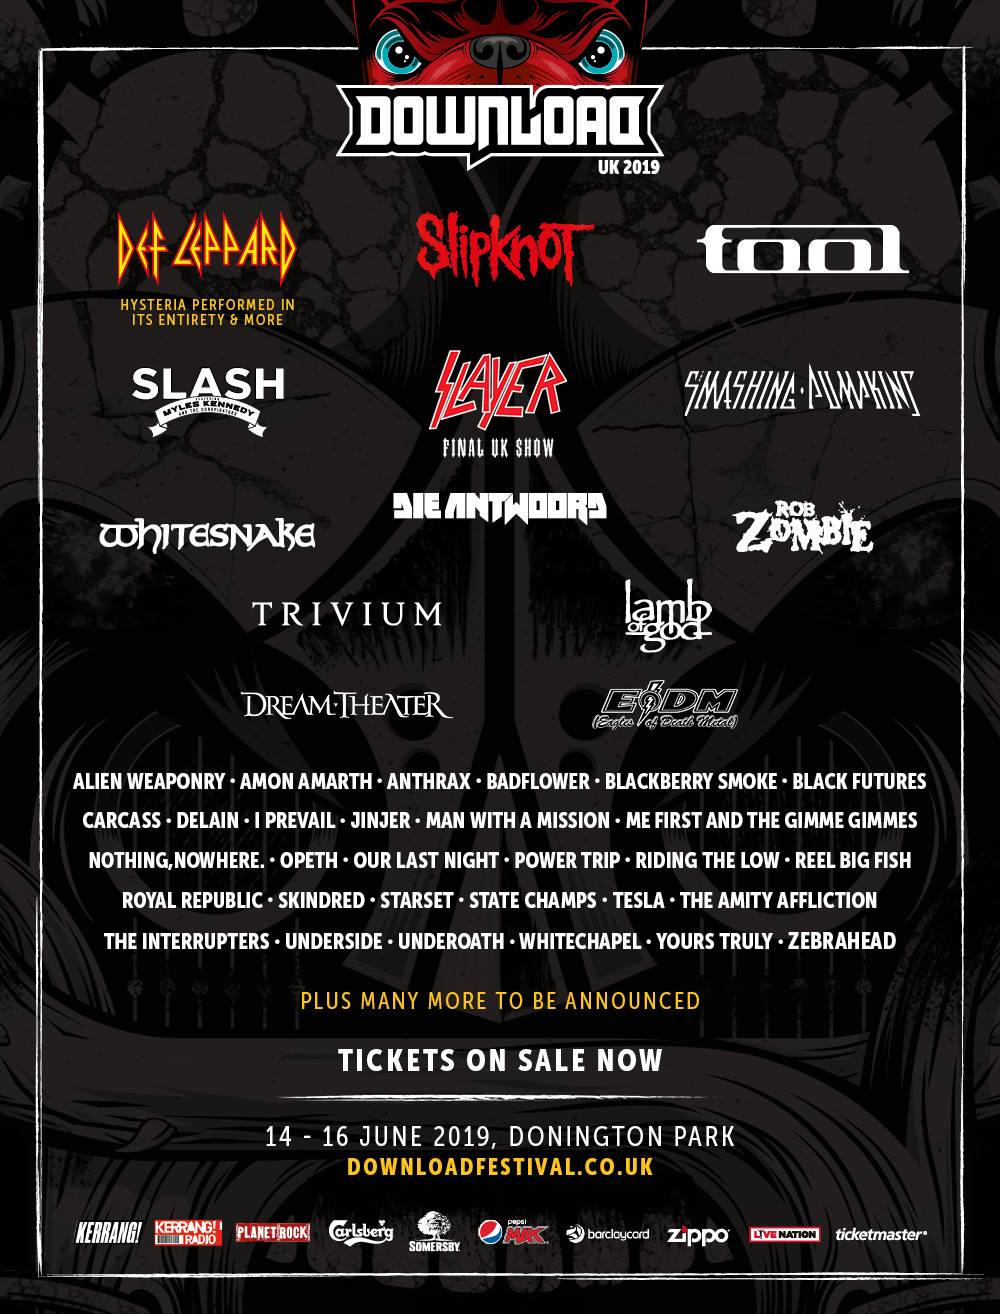 Slayer’s final UK performance set for 2019 ‘Download Festival’